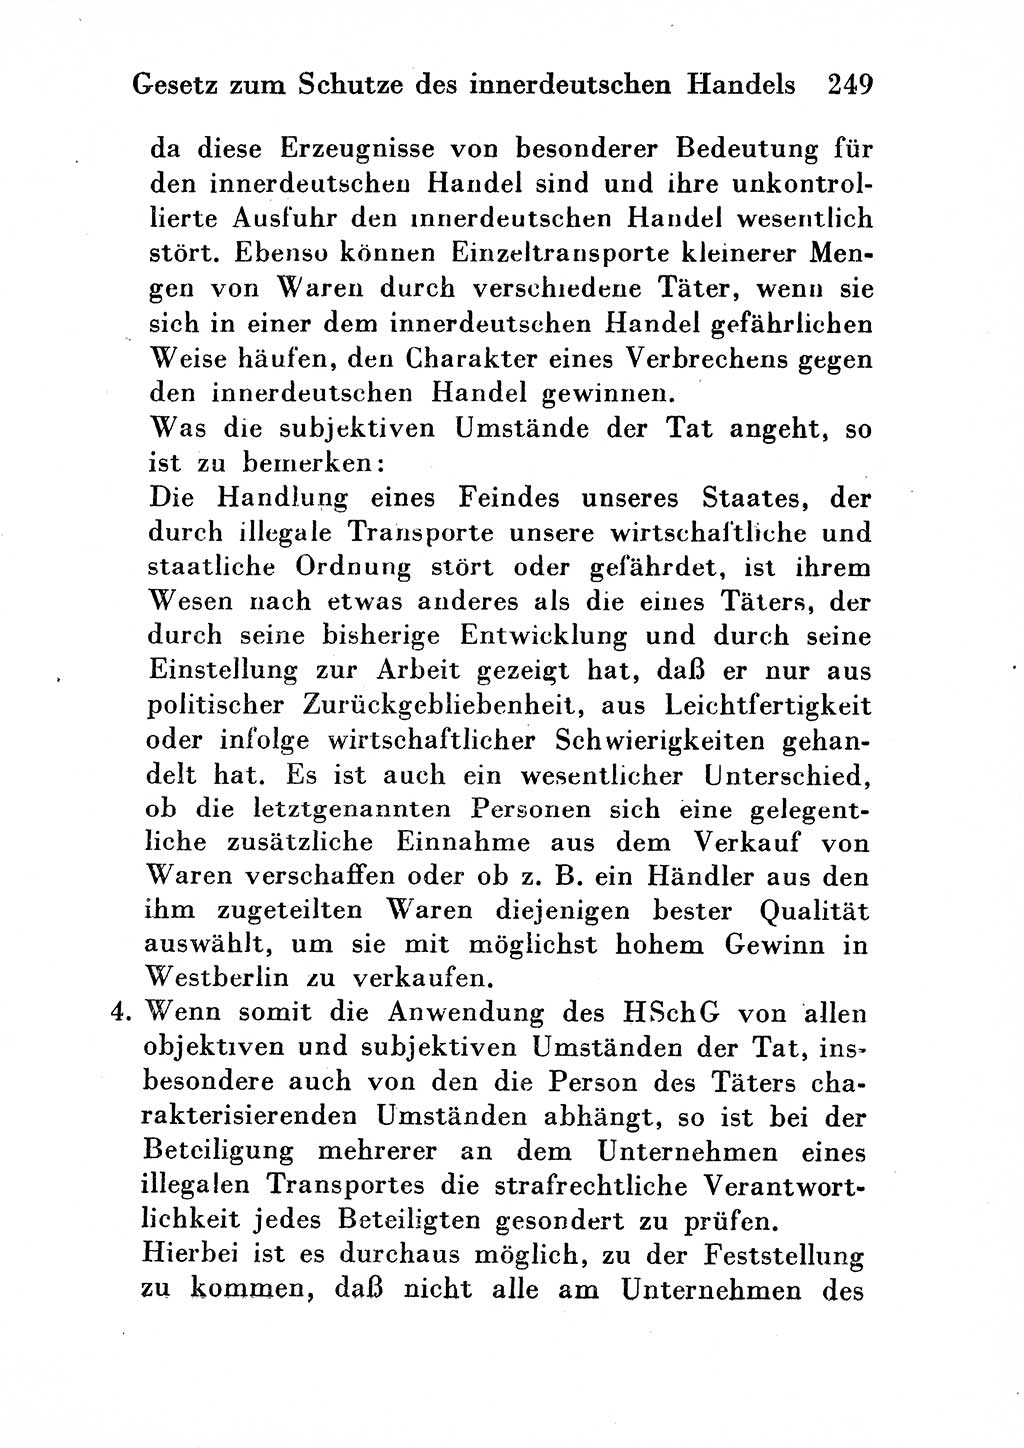 Strafgesetzbuch (StGB) und andere Strafgesetze [Deutsche Demokratische Republik (DDR)] 1954, Seite 249 (StGB Strafges. DDR 1954, S. 249)